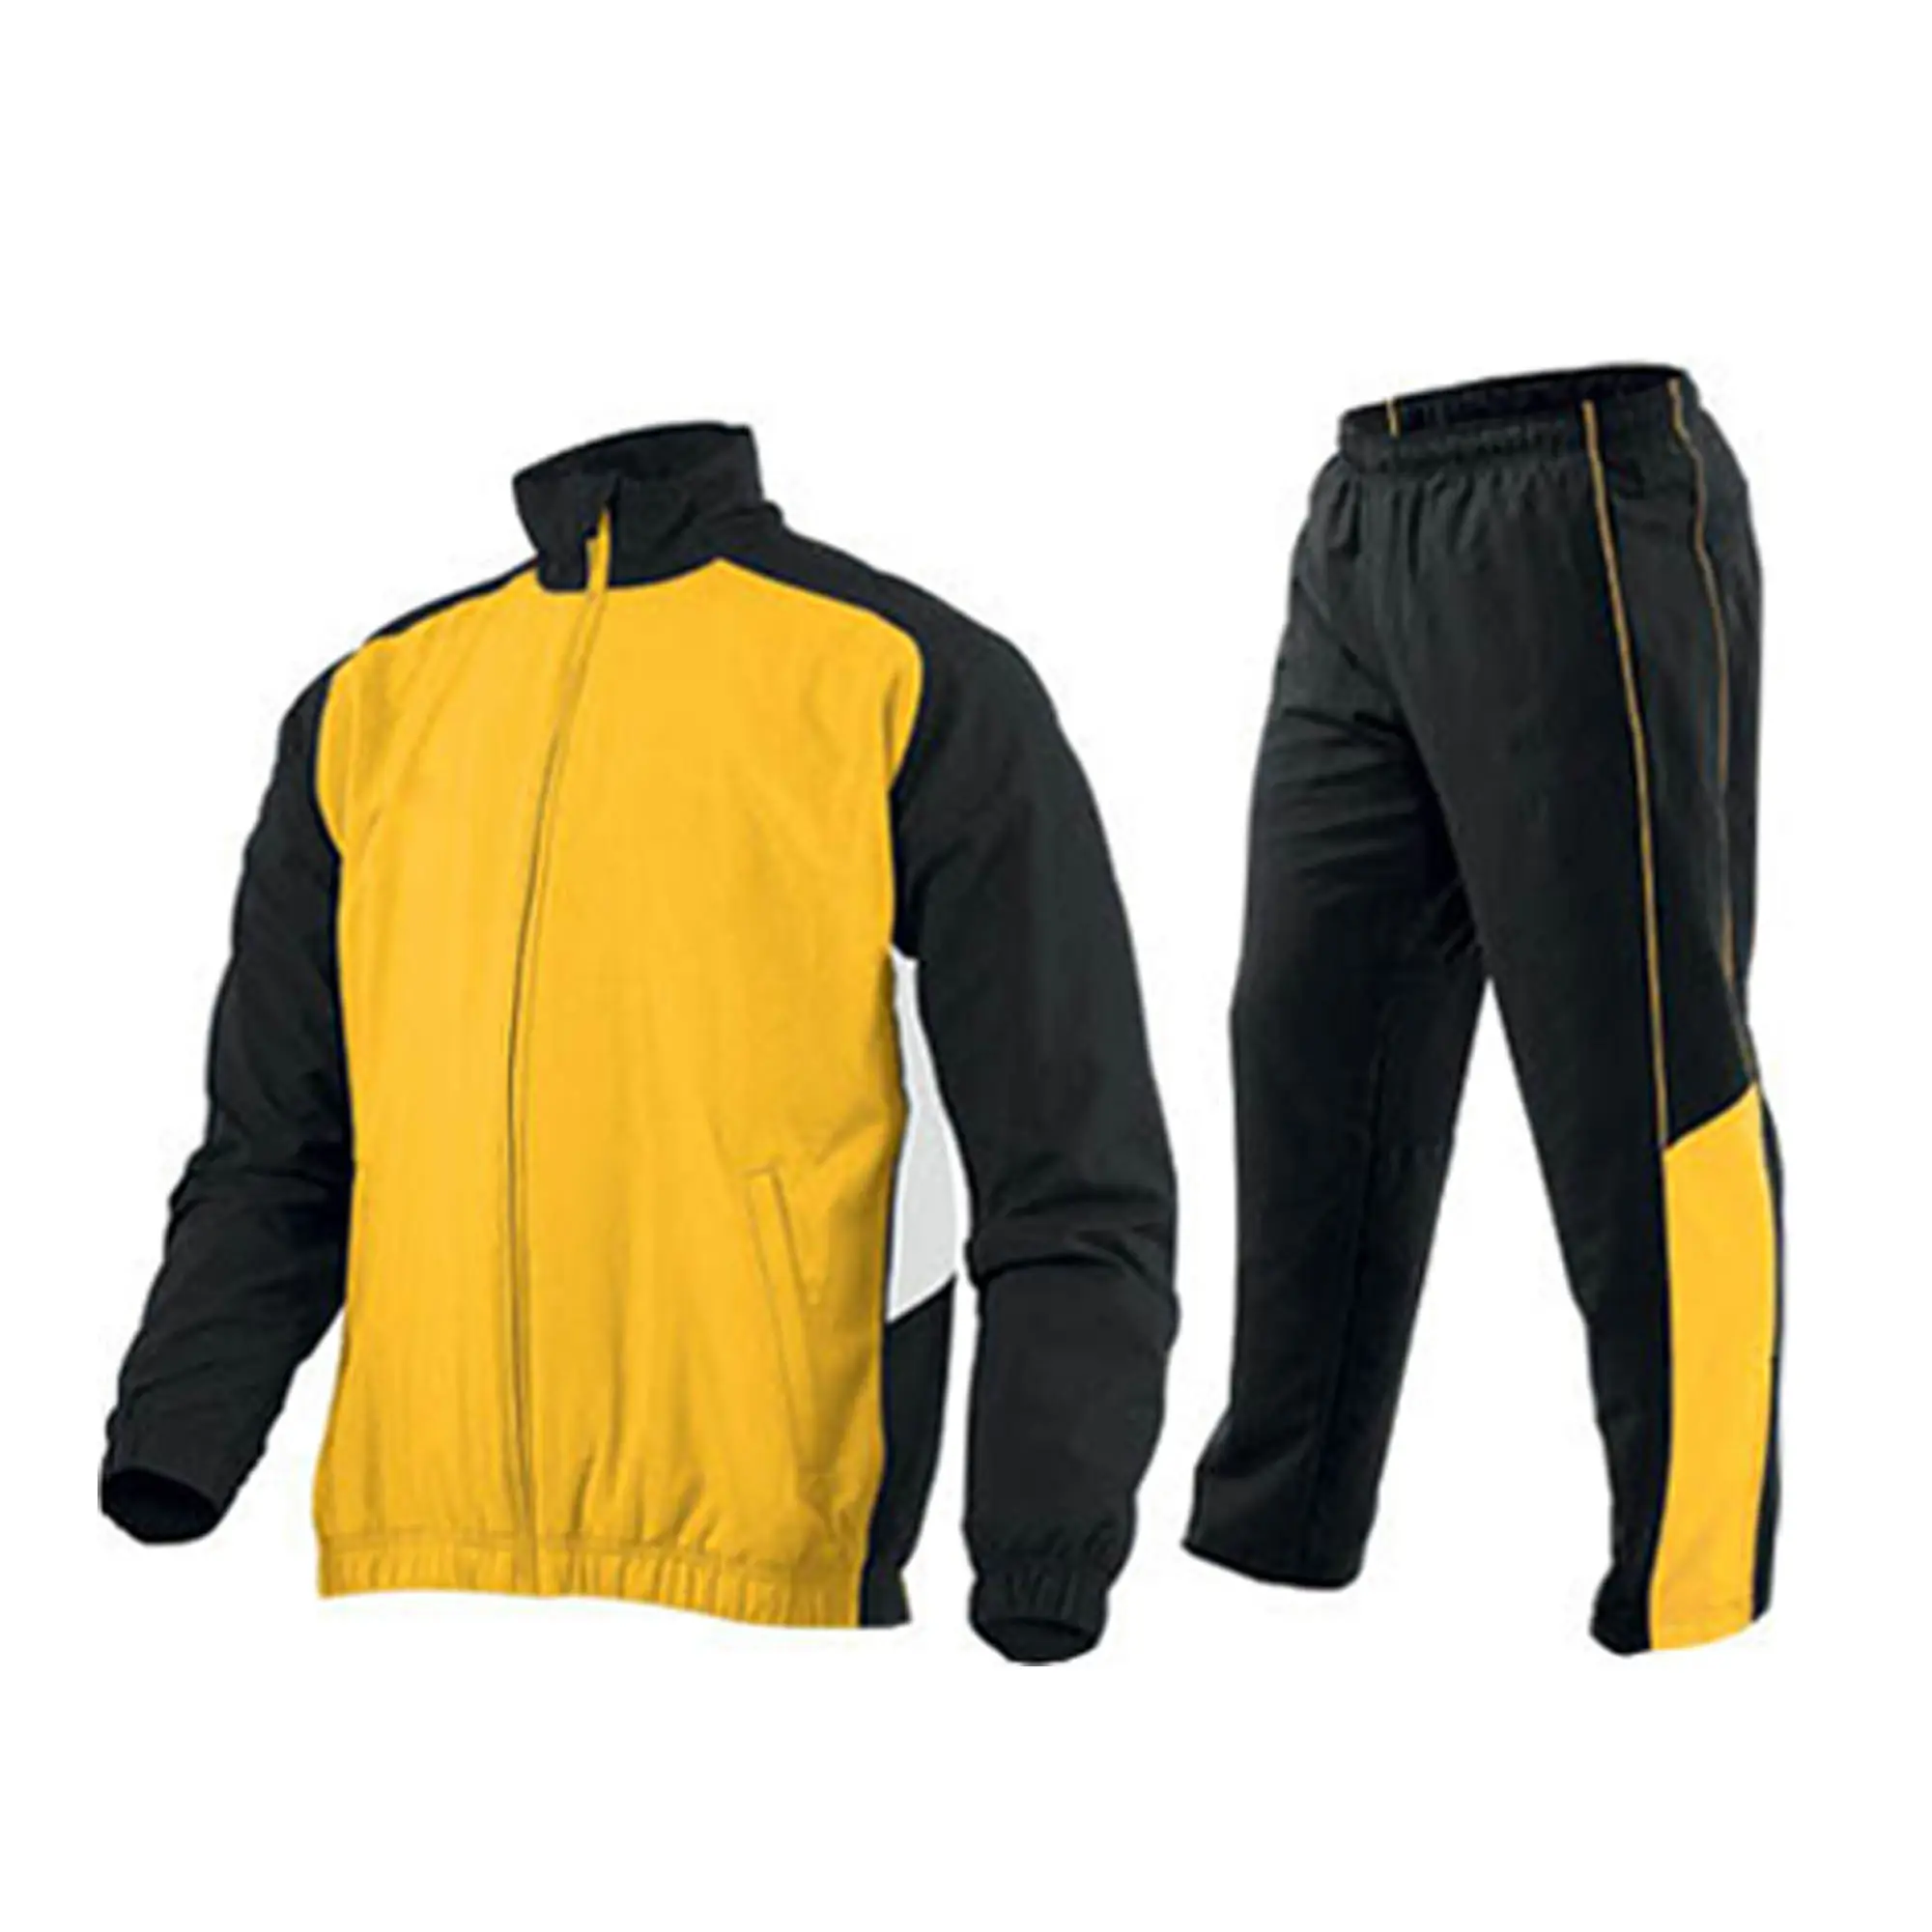 Urban Sportswear set tute sportive tuta sportiva Unisex traspirante e sostenibile tuta sportiva Logo personalizzato 100% cotone